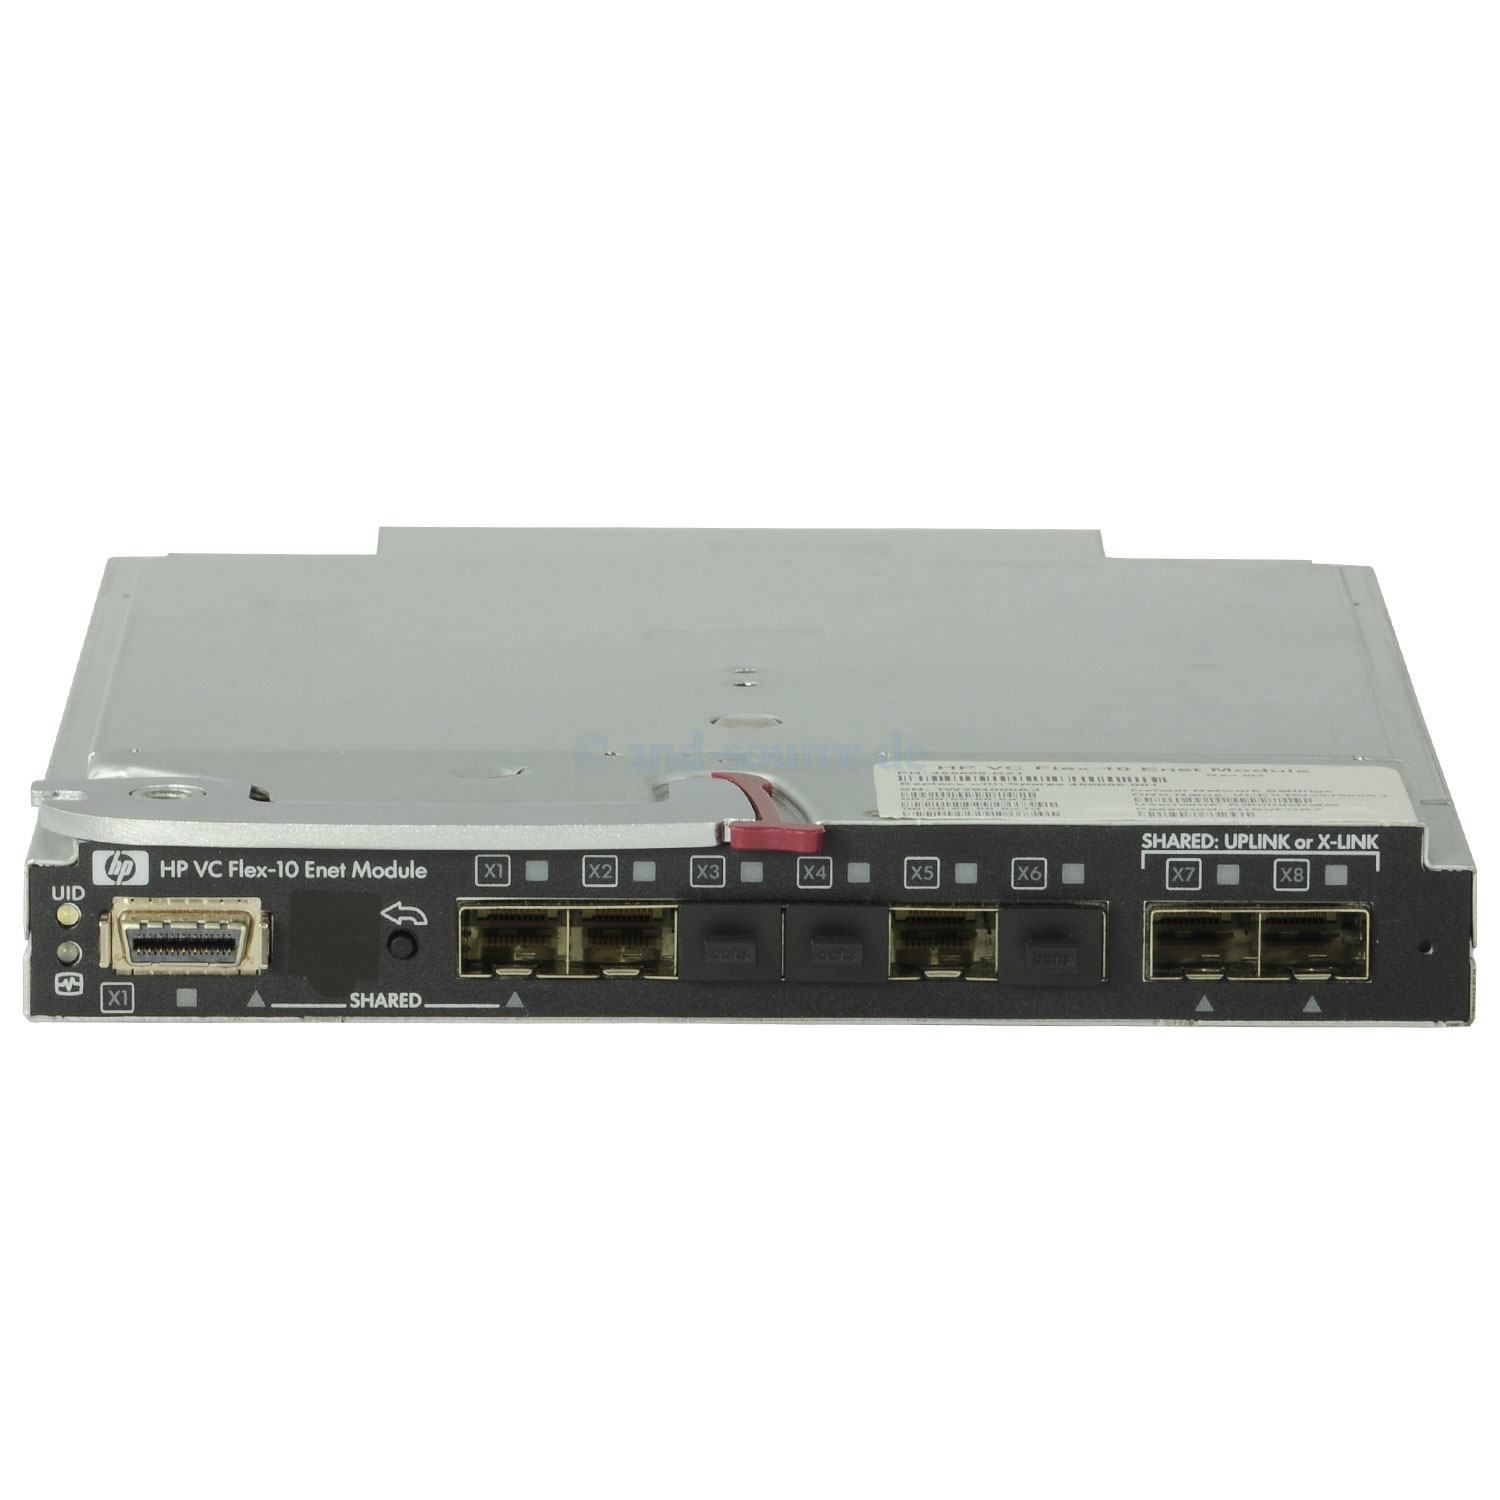 HPE BLc Flex-10 10GbE Virtual Connect Ethernet Module 455880-B21 456095-001